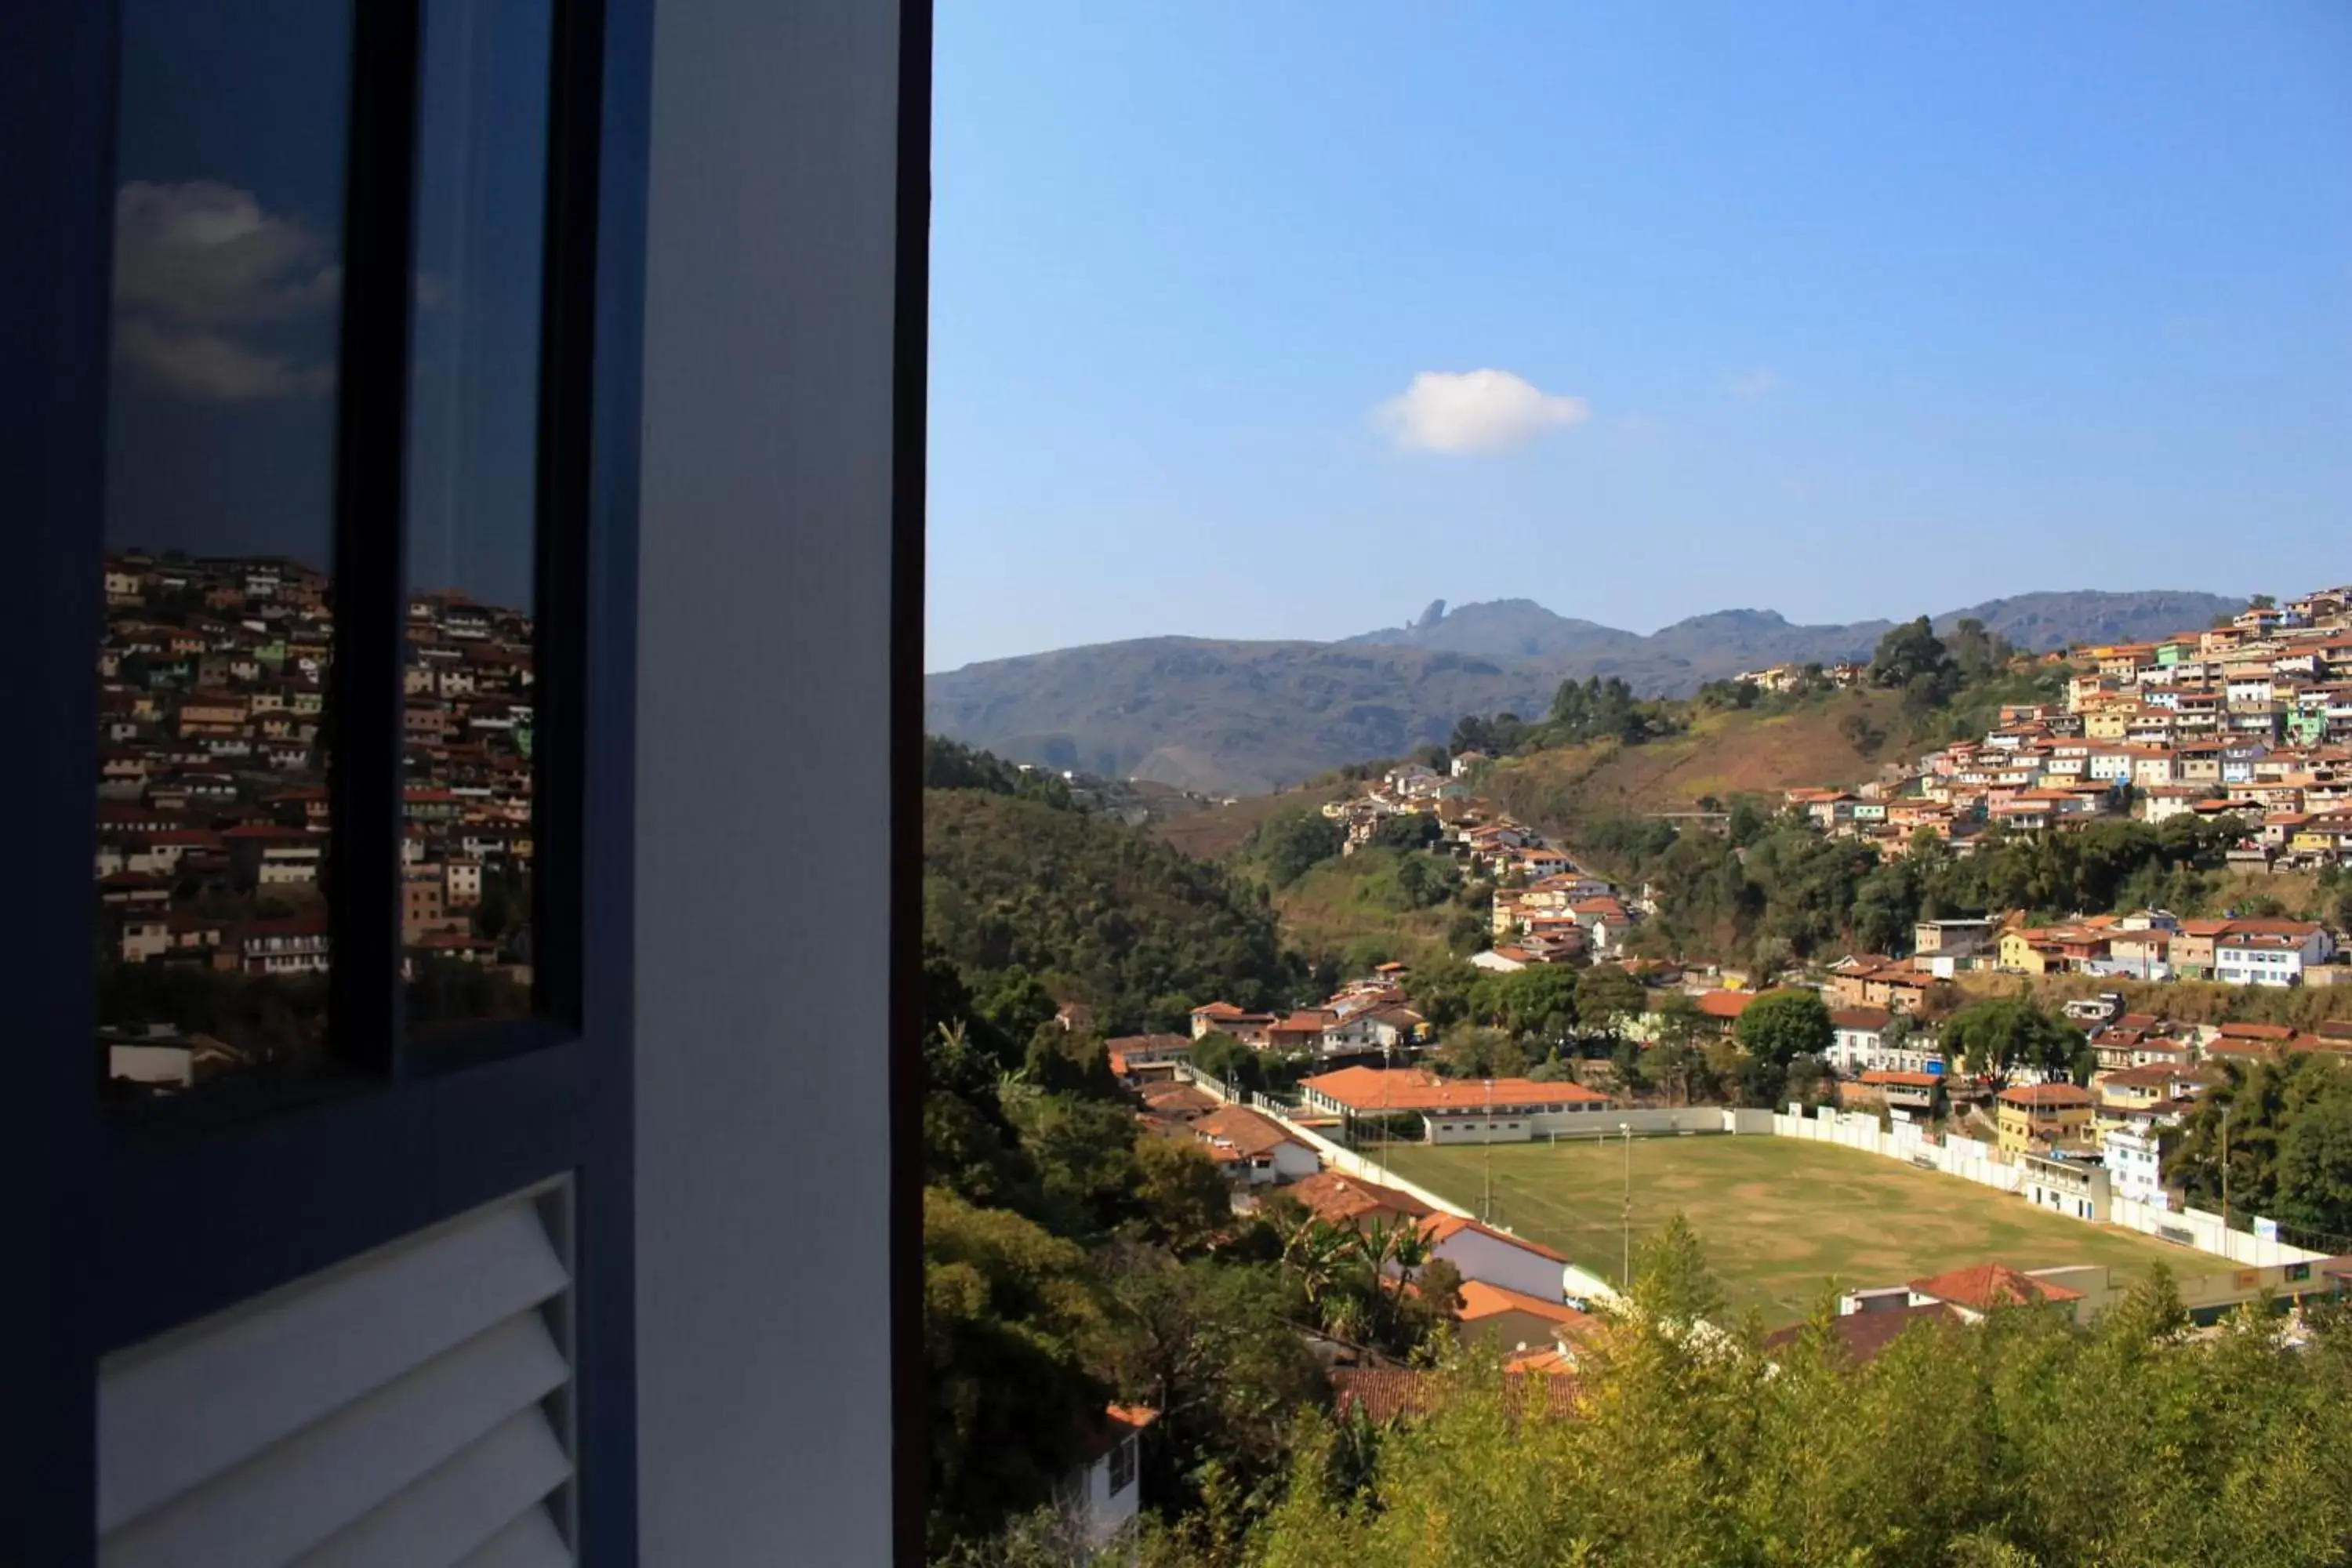 Off site, Mountain View in Hotel Pousada Minas Gerais